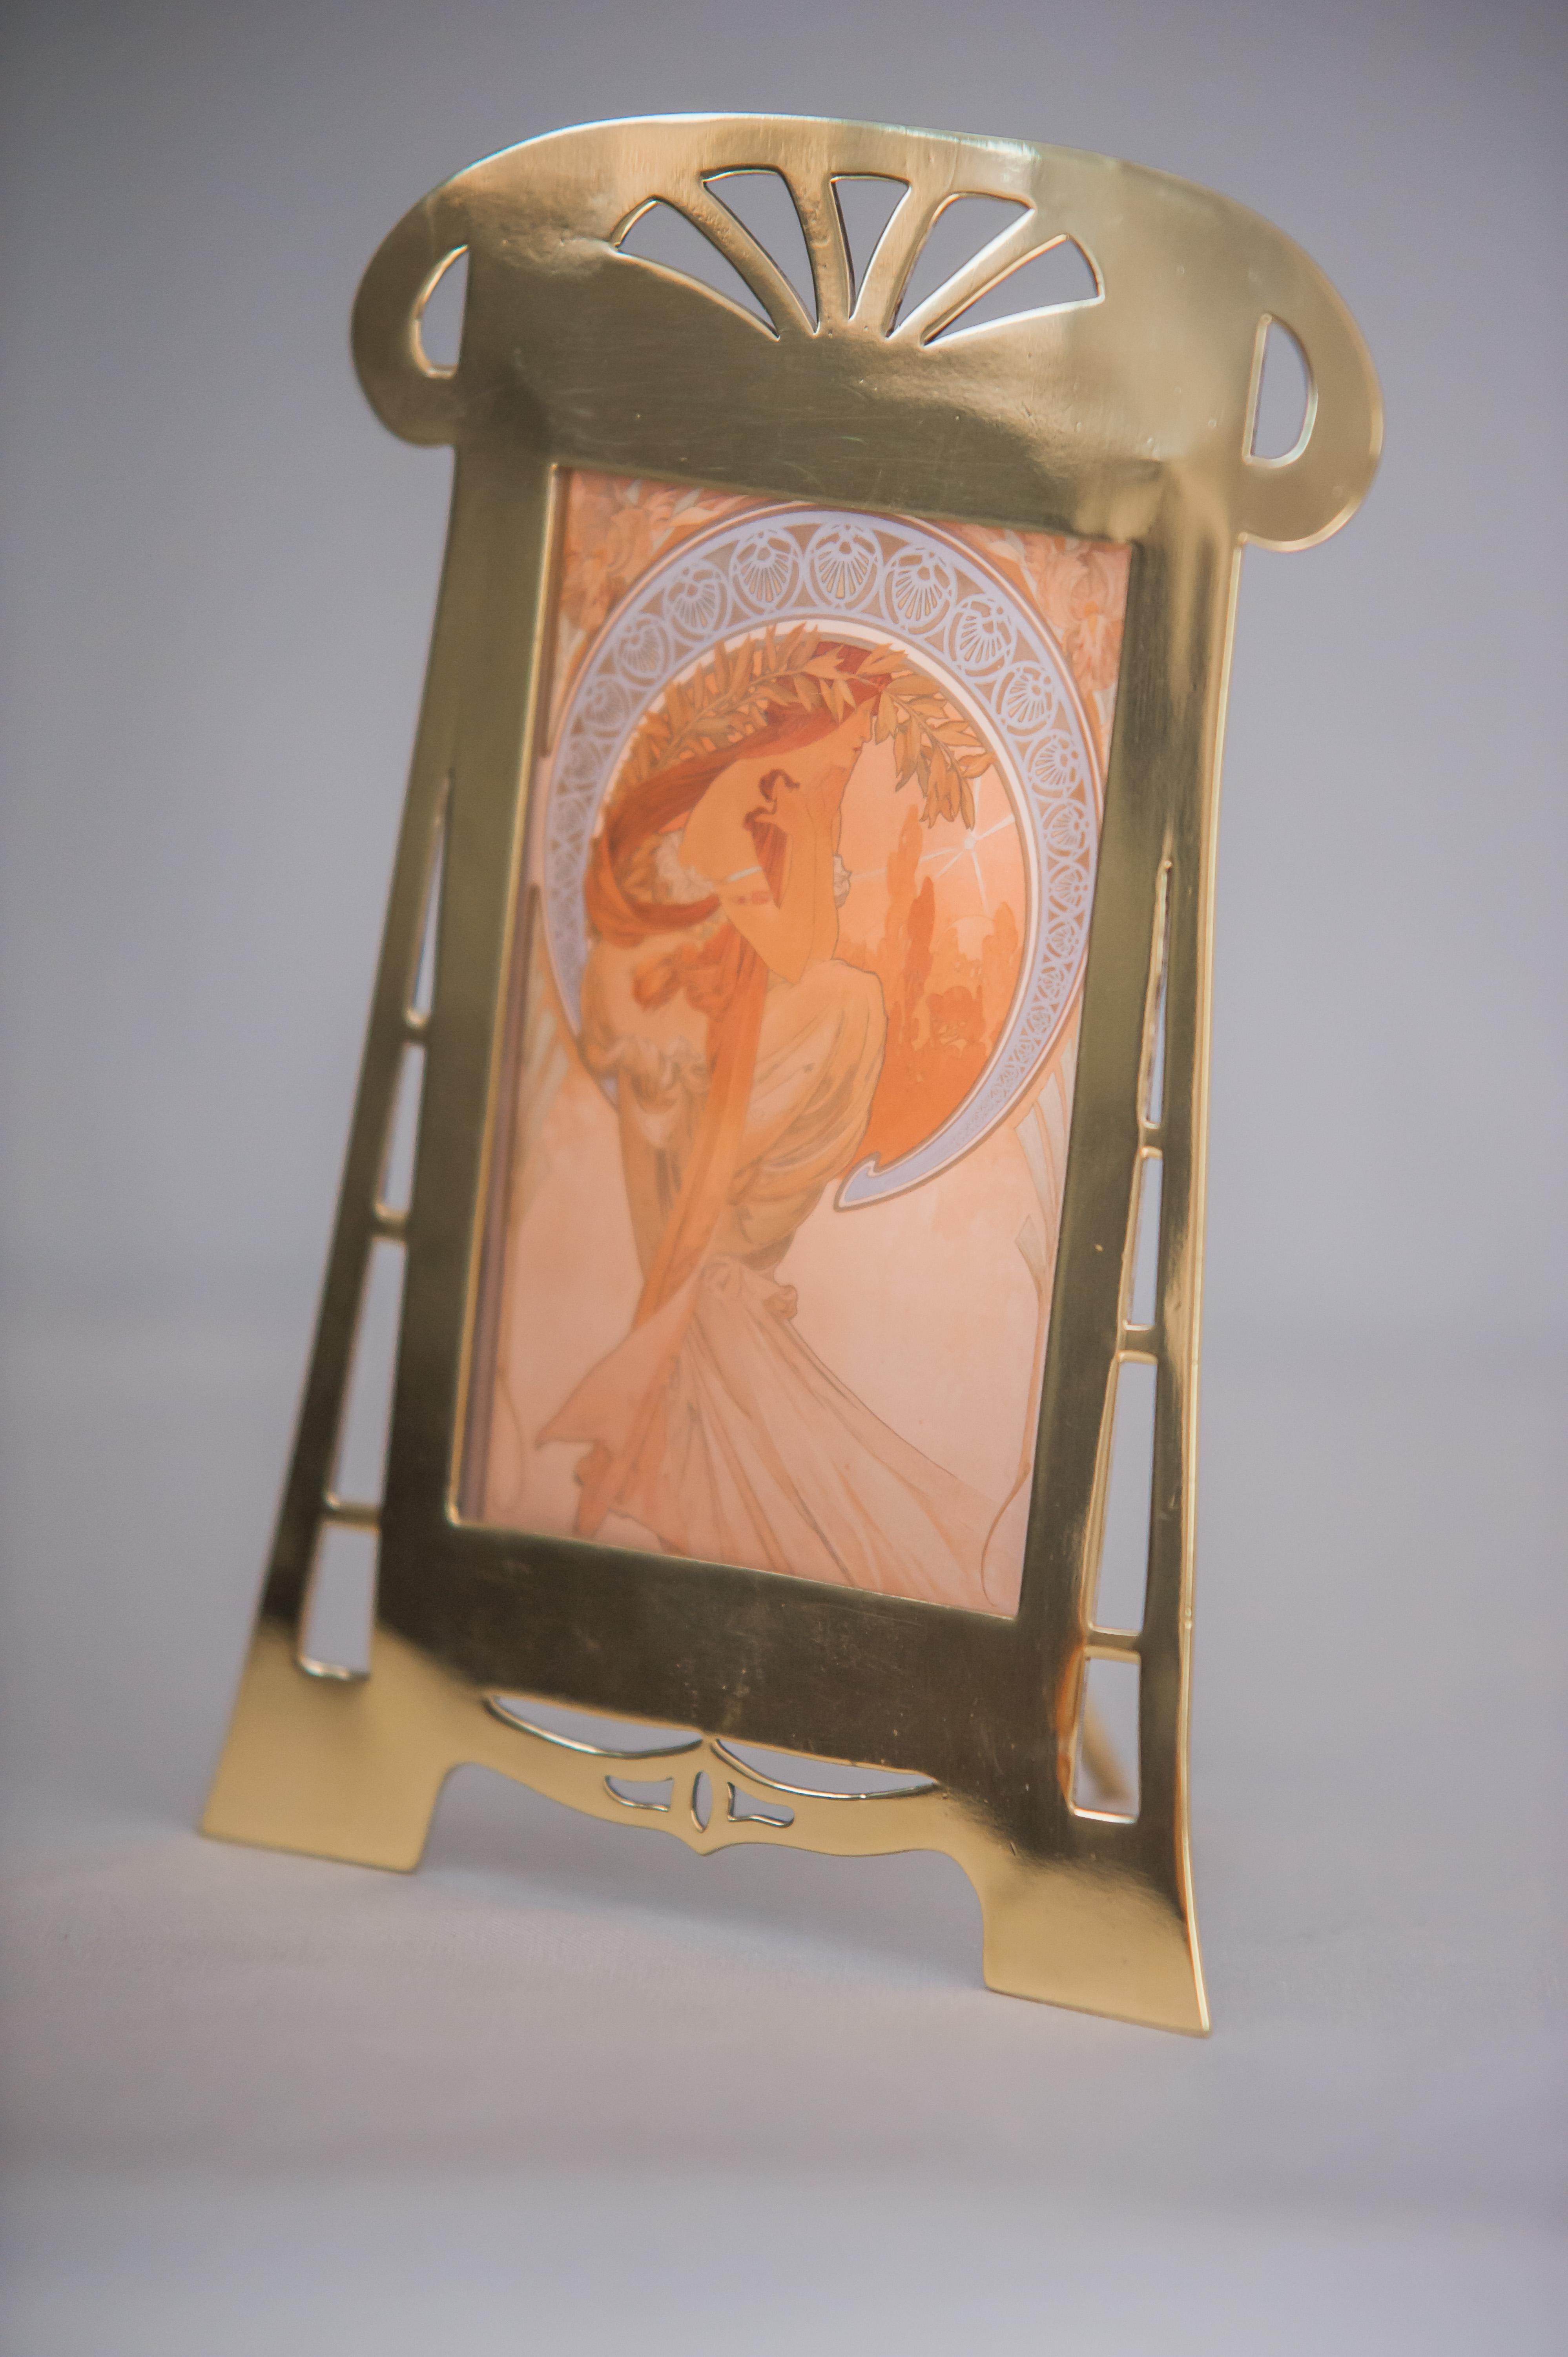 Jugendstil picture Frame, circa 1910s.
Polished and stove enamelled.